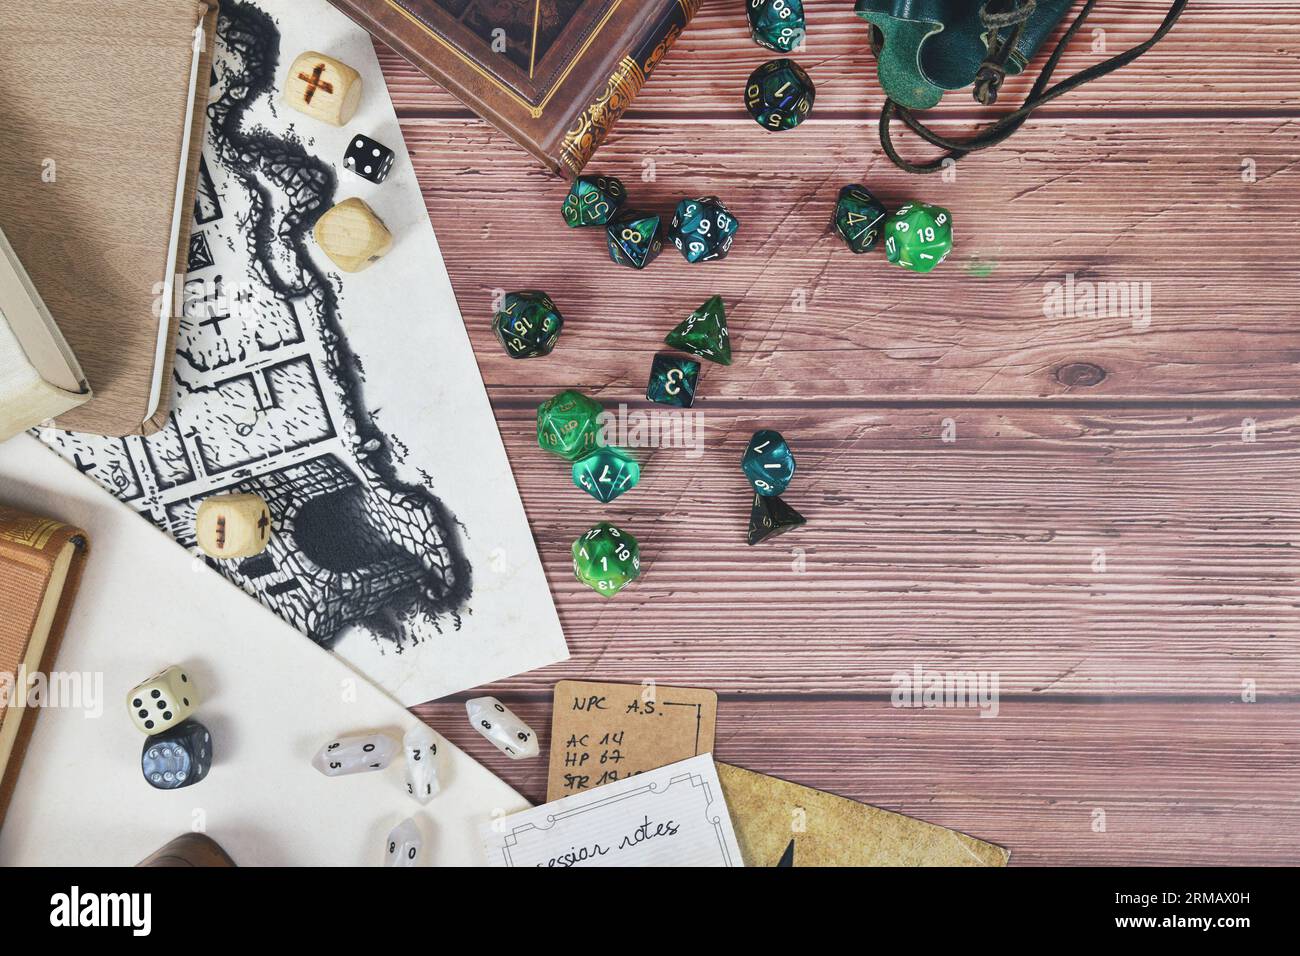 Tischrollenspiel flach liegender Hintergrund mit bunten Rollenwürfeln, Regelbüchern und Notizen auf Holzhintergrund mit Platz zum Kopieren Stockfoto